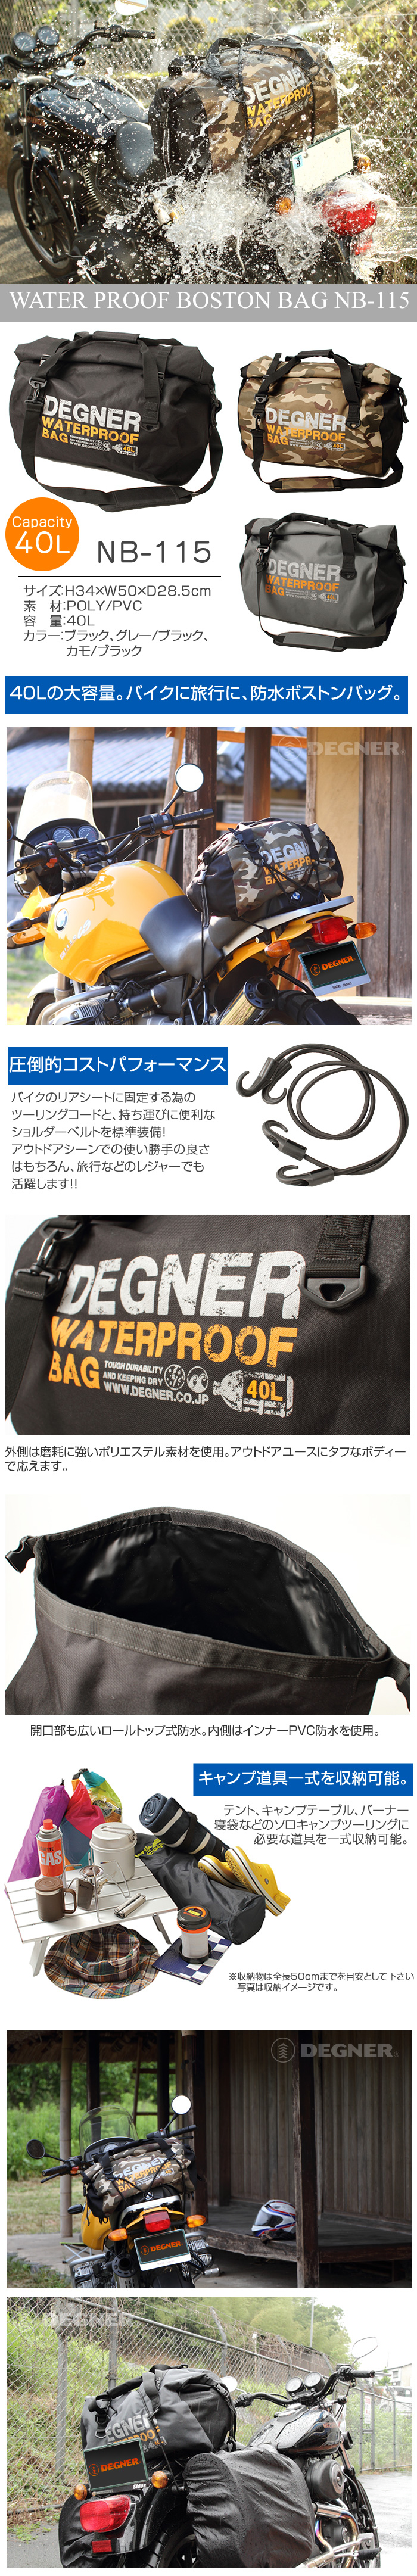 デグナー DEGNER 防水バッグ ボストンバッグ 大容量バッグ アウトドア 